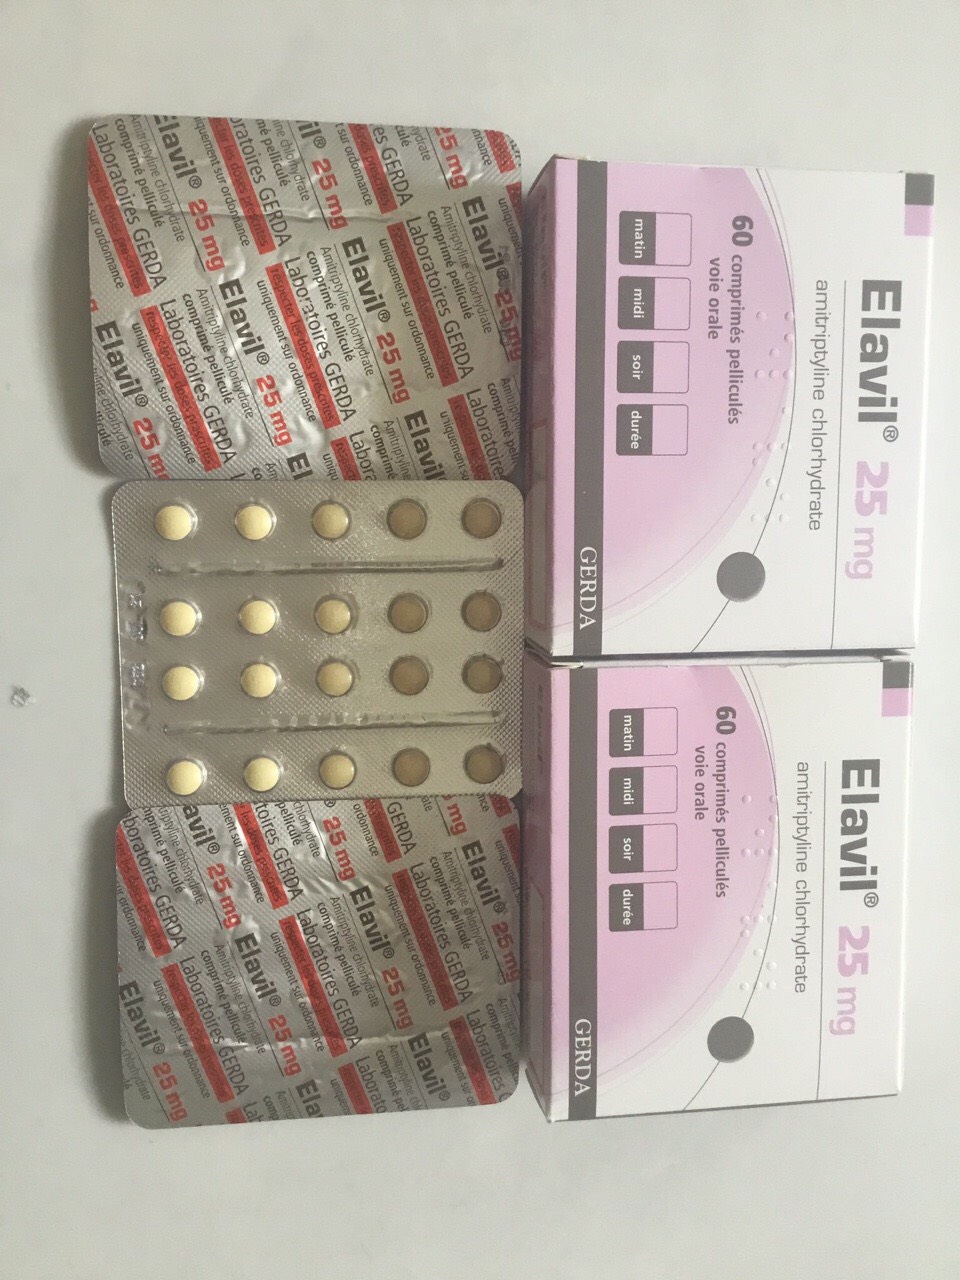 Elavil 25mg - Thuốc amitriptyline điều trị trầm cảm của Pháp